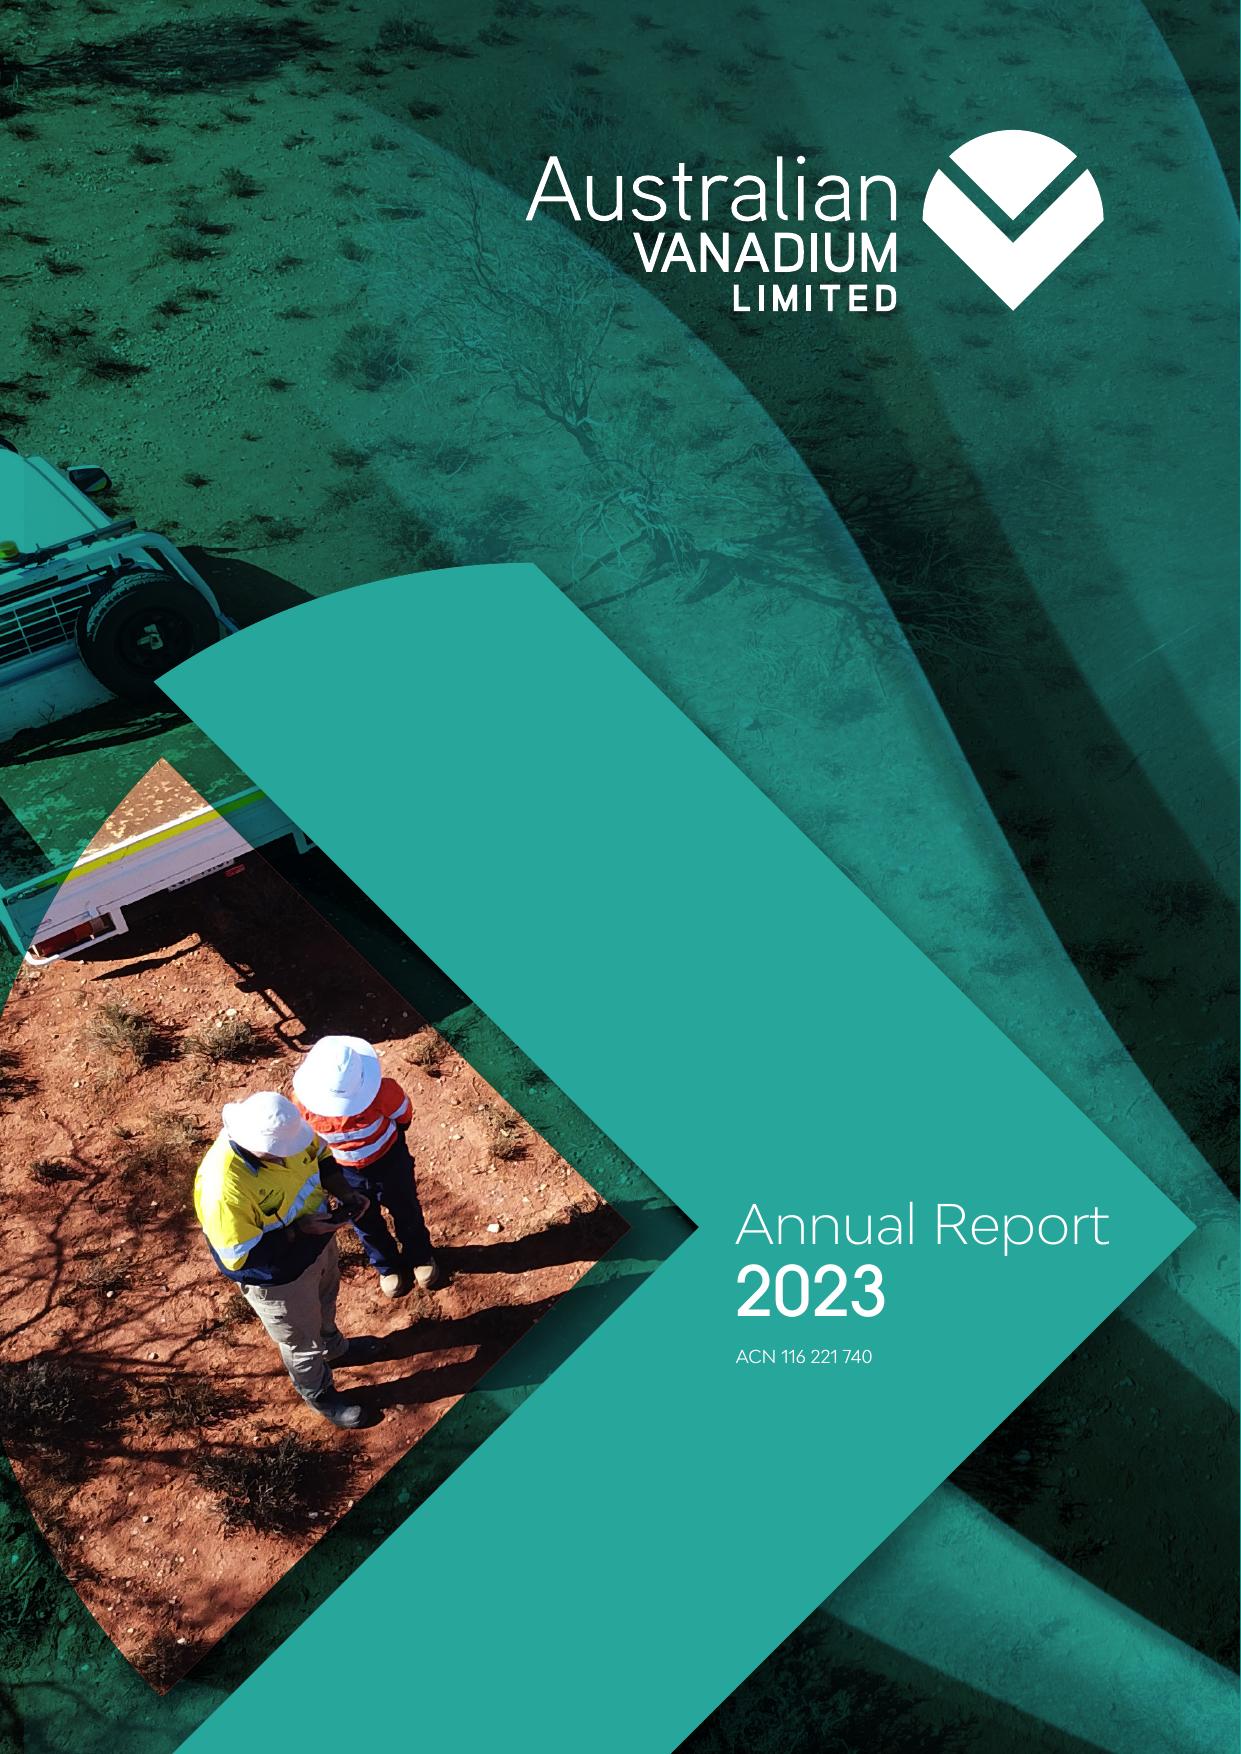 AUSTRALIANVANADIUM 2023 Annual Report